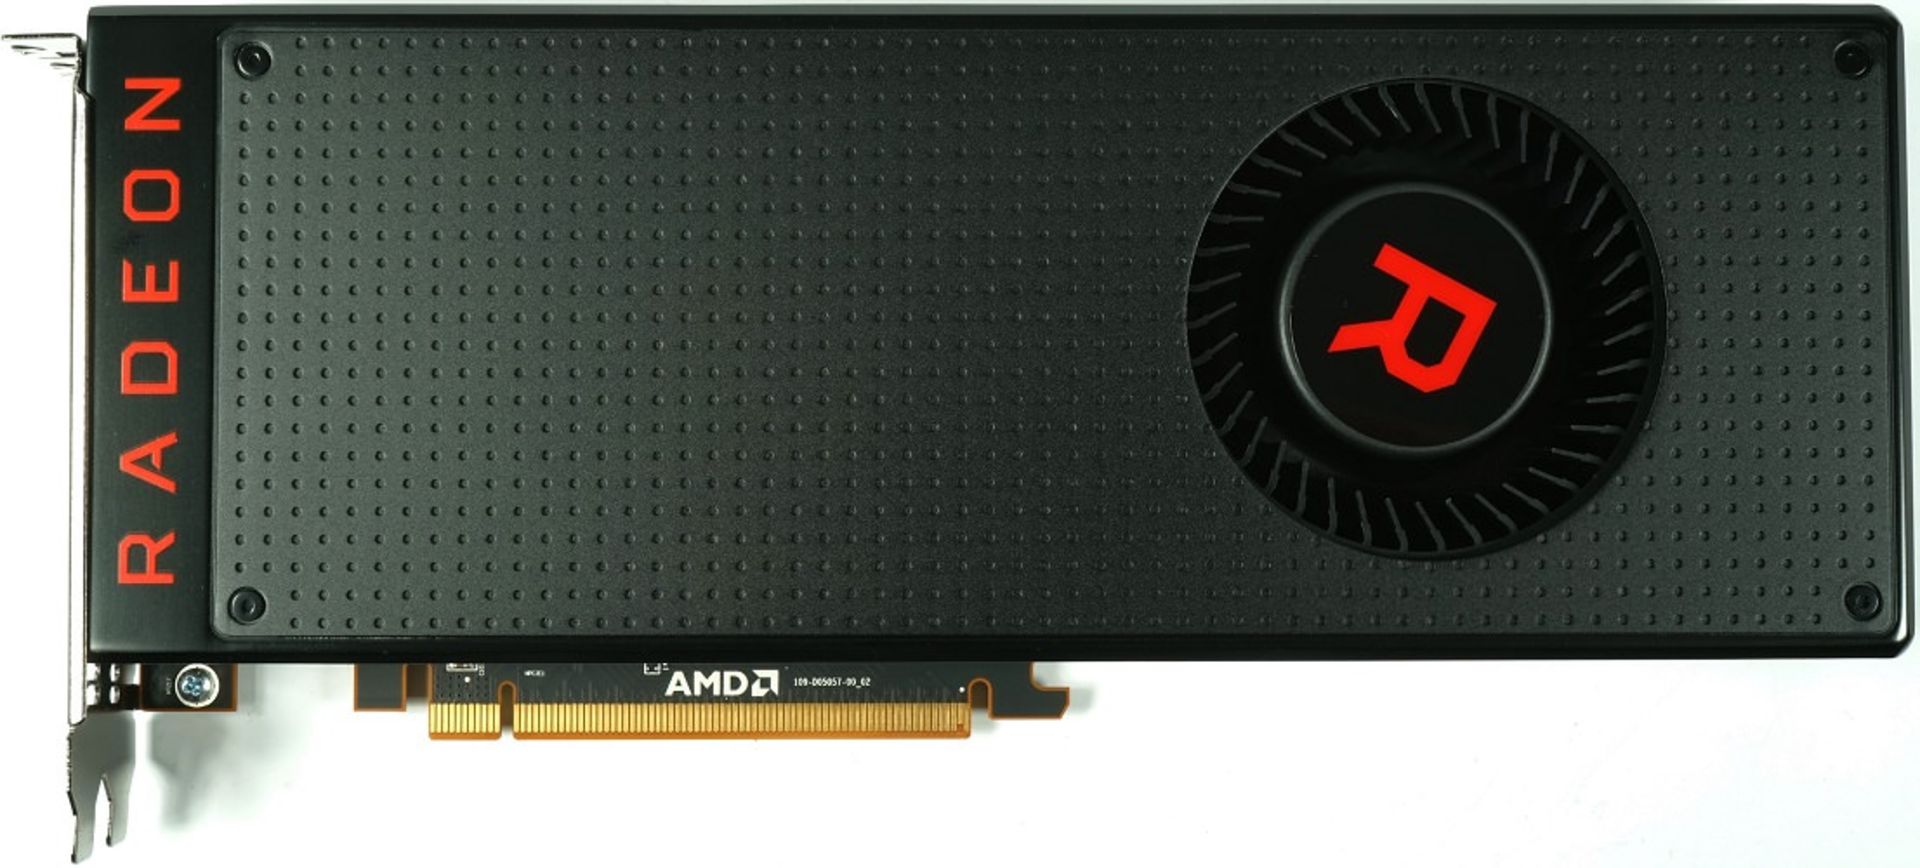 مرجع متخصصين ايران AMD GPU